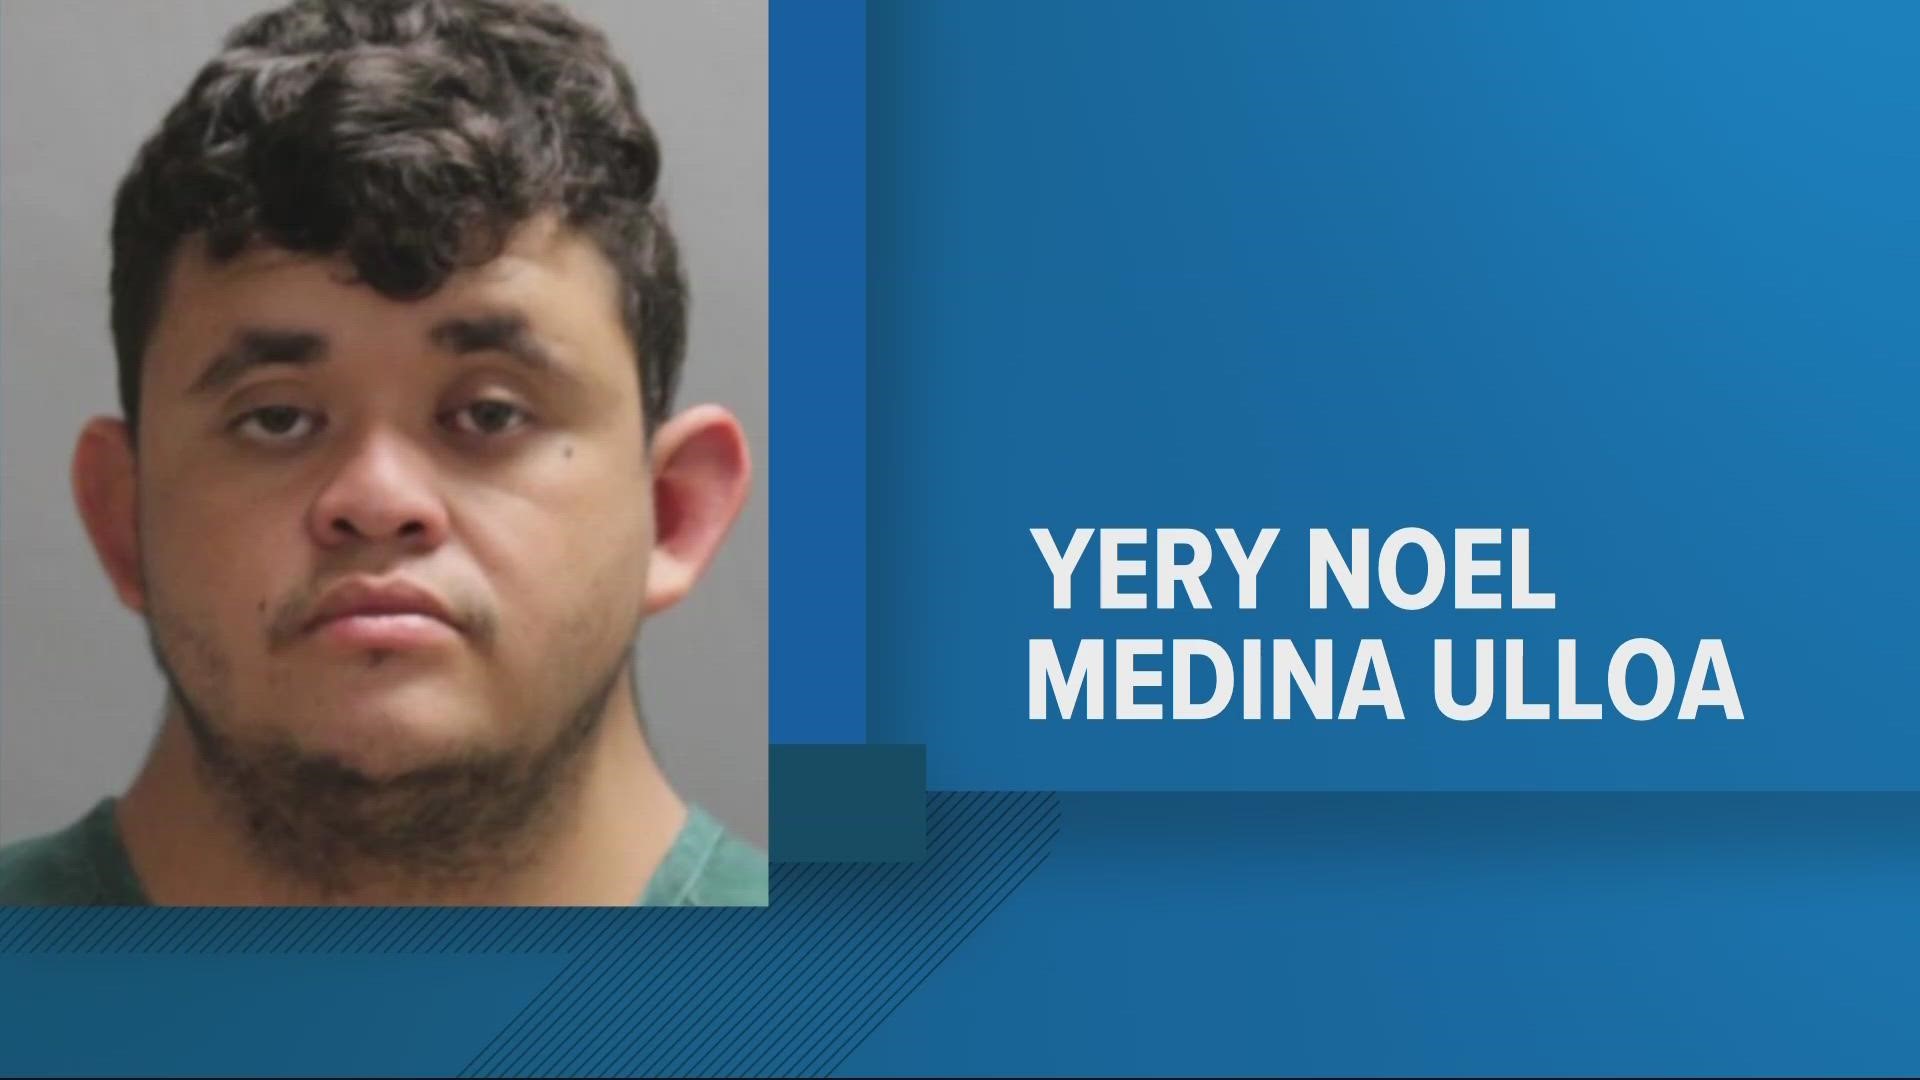 Yery Noel Medina Ulloa plead guilty to second degree murder iYery Noel Medina Ulloa plead guilty to second degree murder in a death of 46-year-old.